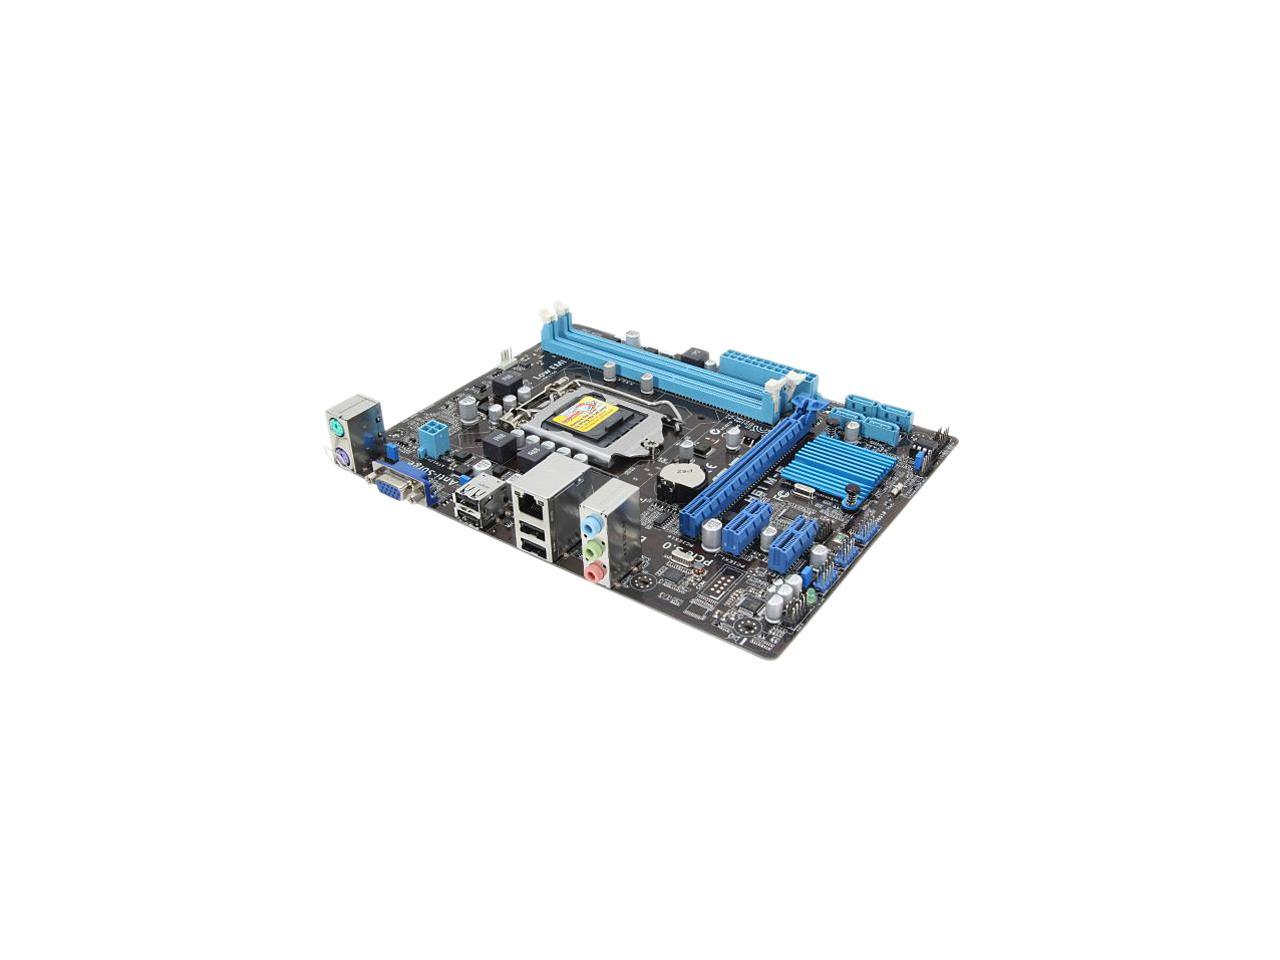 ASUS H61M-E LGA 1155 Intel H61 (B3) Micro ATX Intel Motherboard